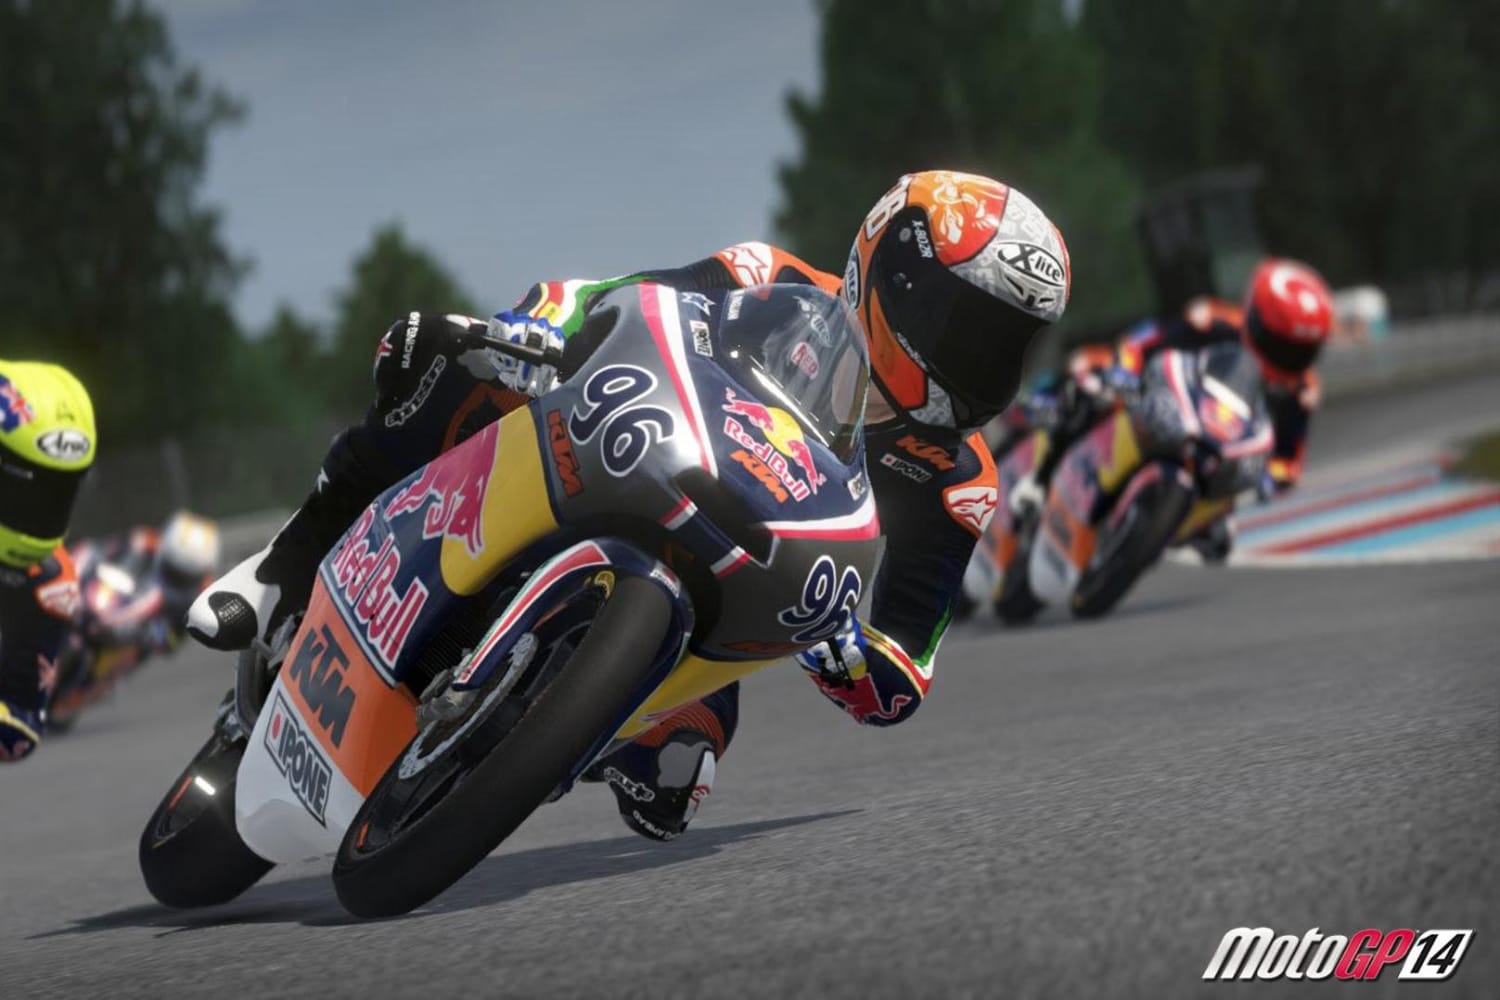 MotoGP 14 exclusive DLC reveal